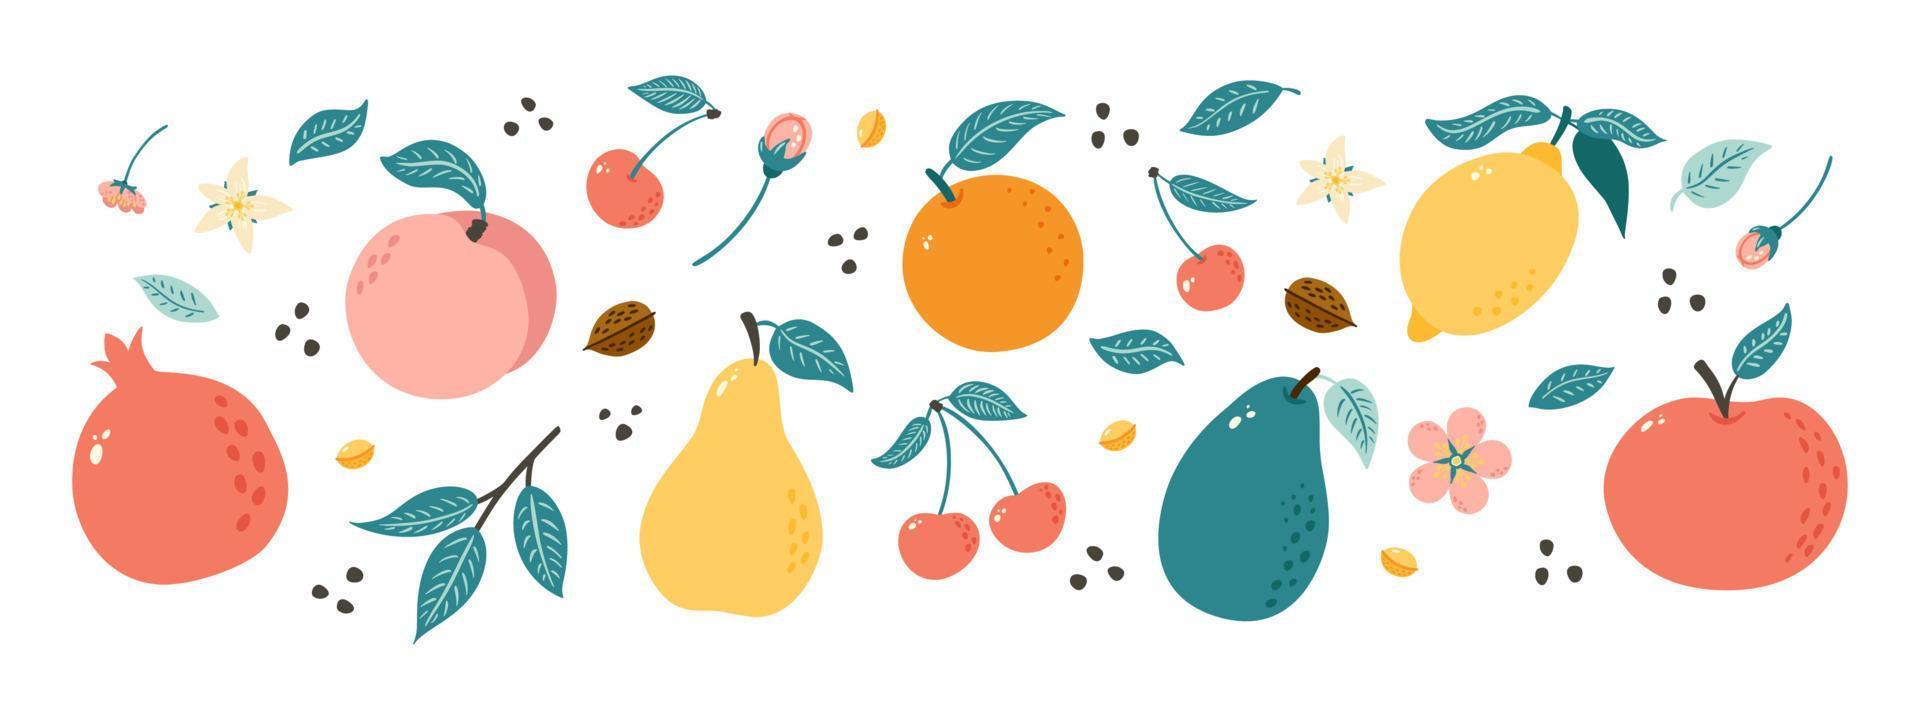 frutti disegnati a mano. raccolta di illustrazioni di frutta in stile doodle per poster, banner, sfondo, etichetta del mercato, logo, adesivo, cartolina, menu, design e decorazione di pacchetti alimentari vettore